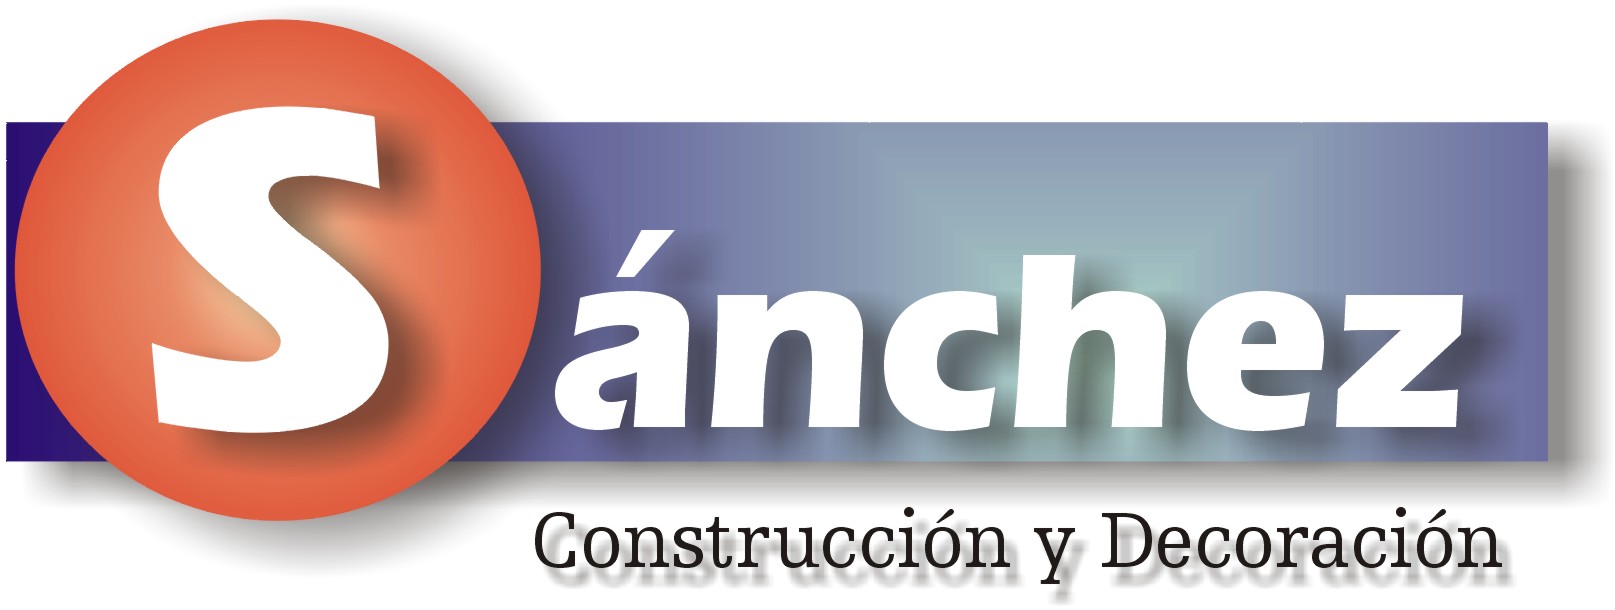 Materiales de Construcción Sanchez Carretero